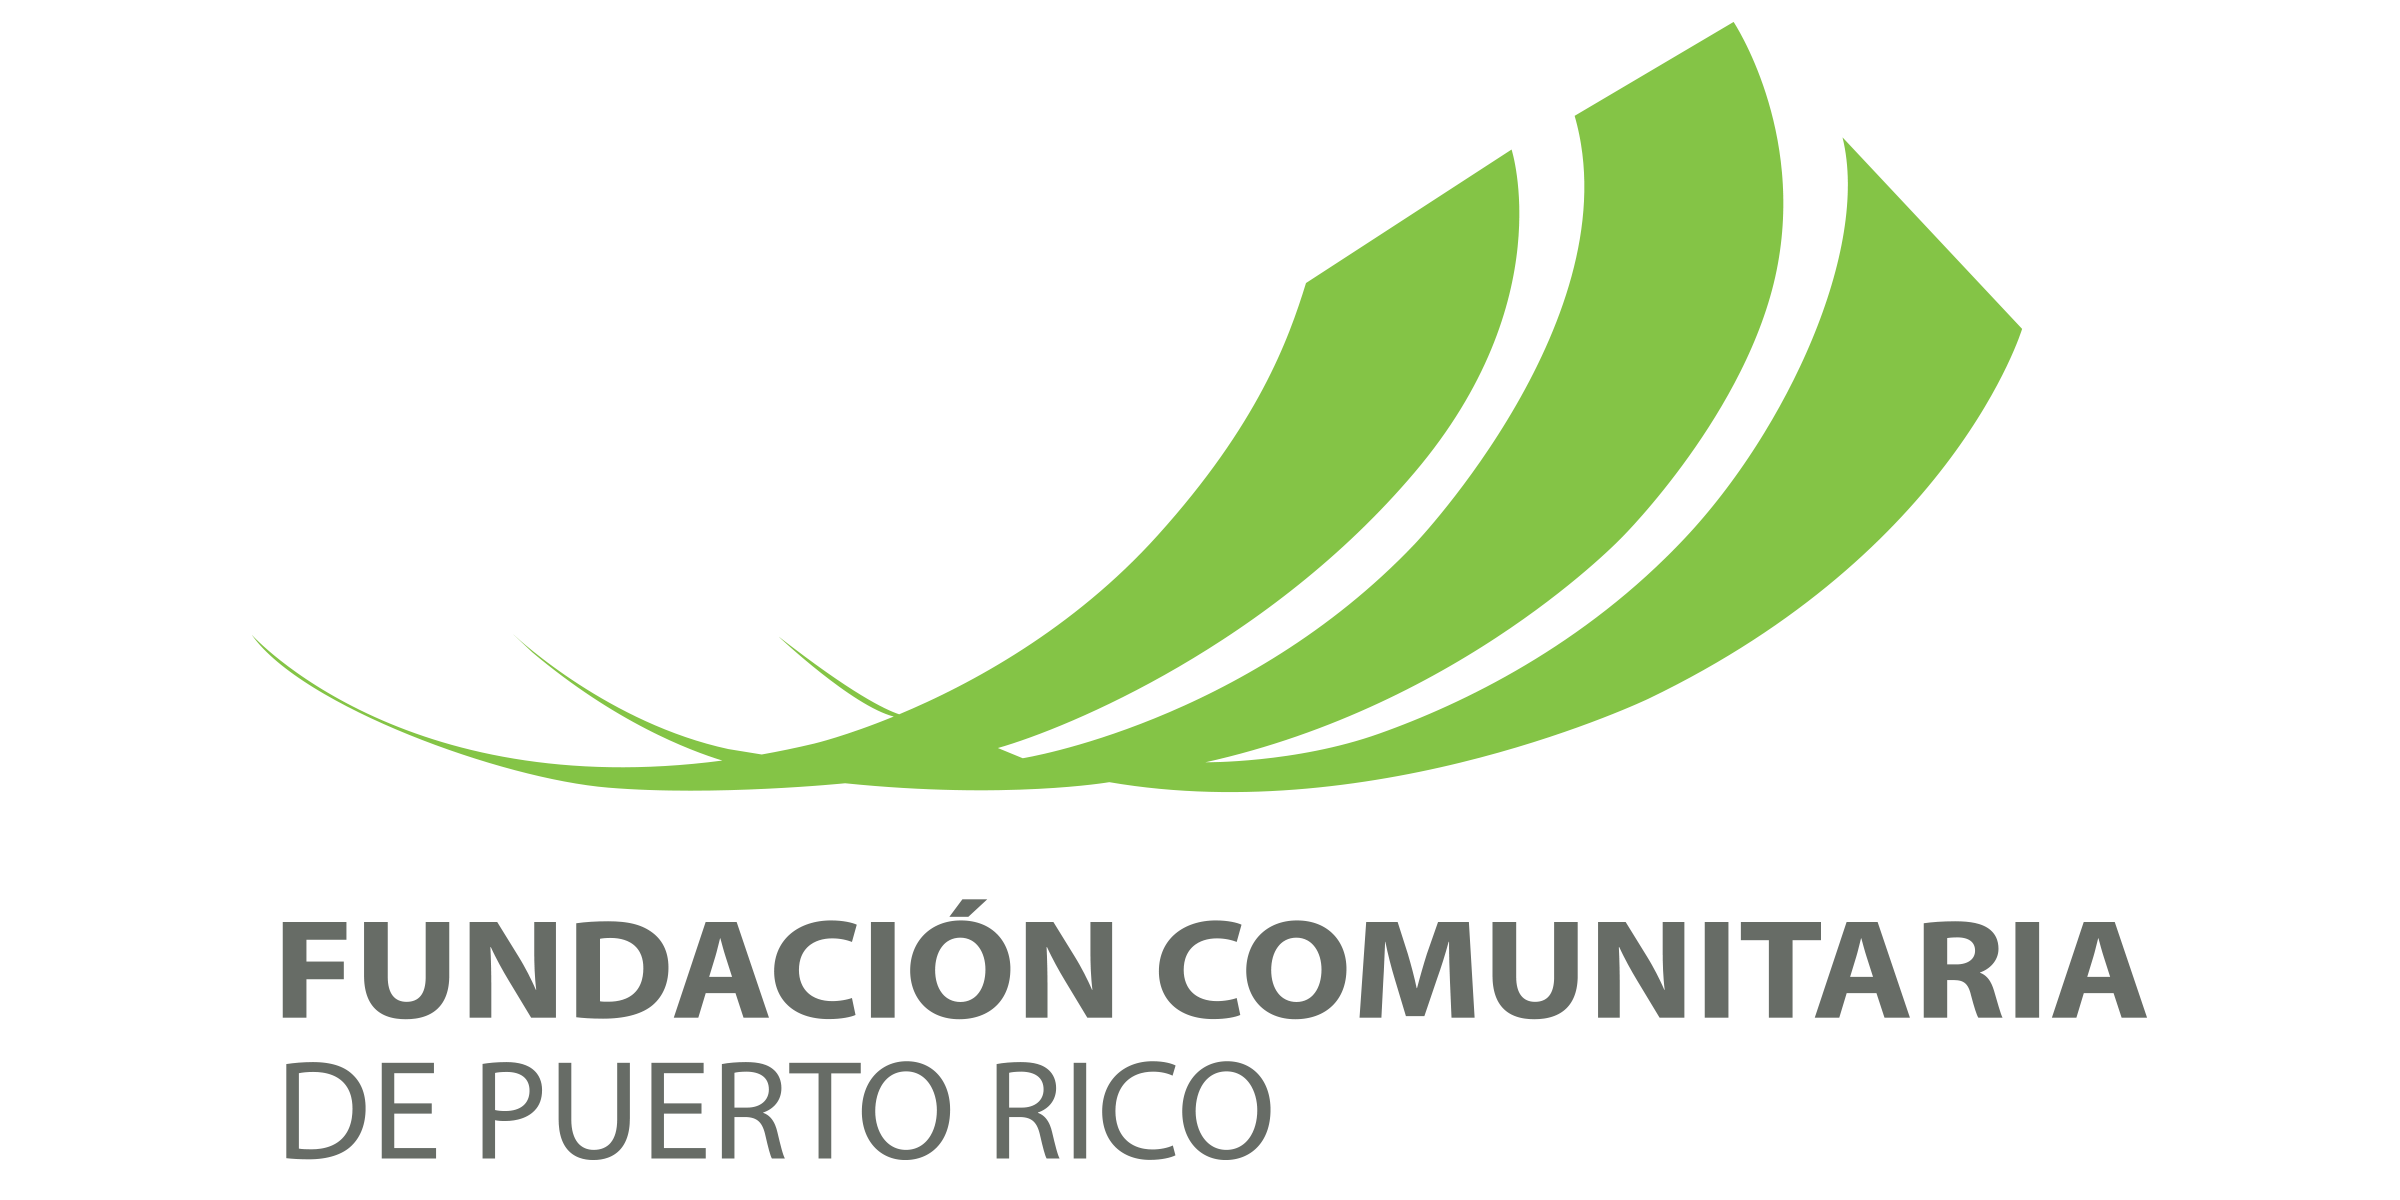 Fundación Comunitaria de Puerto Rico